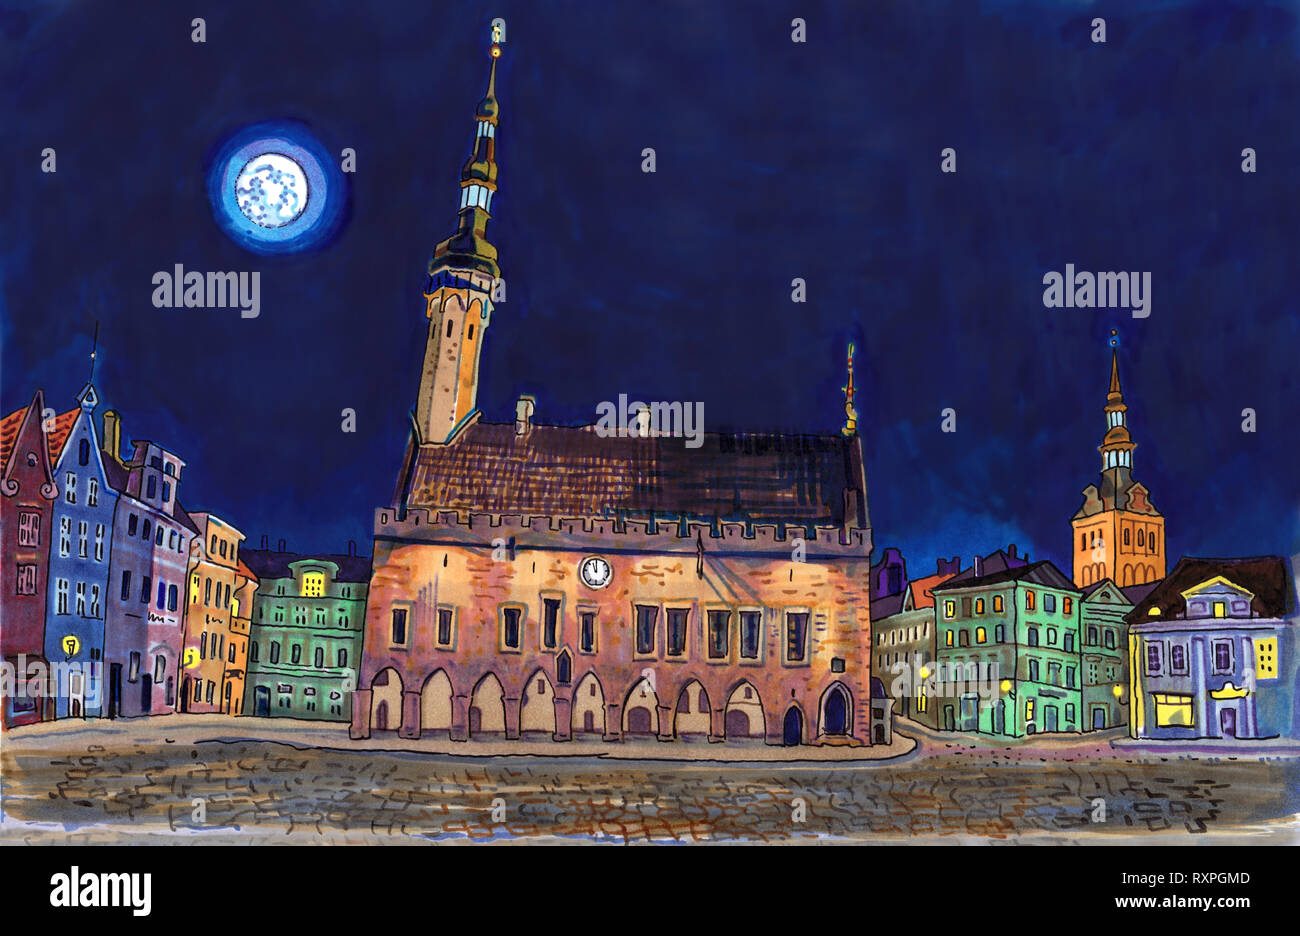 Town Hall Square nella Città Vecchia di Tallinn a notte. Architettura storica, San Nicola o Niguliste chiesa, luci della città, la luna piena. Paesi baltici Foto Stock